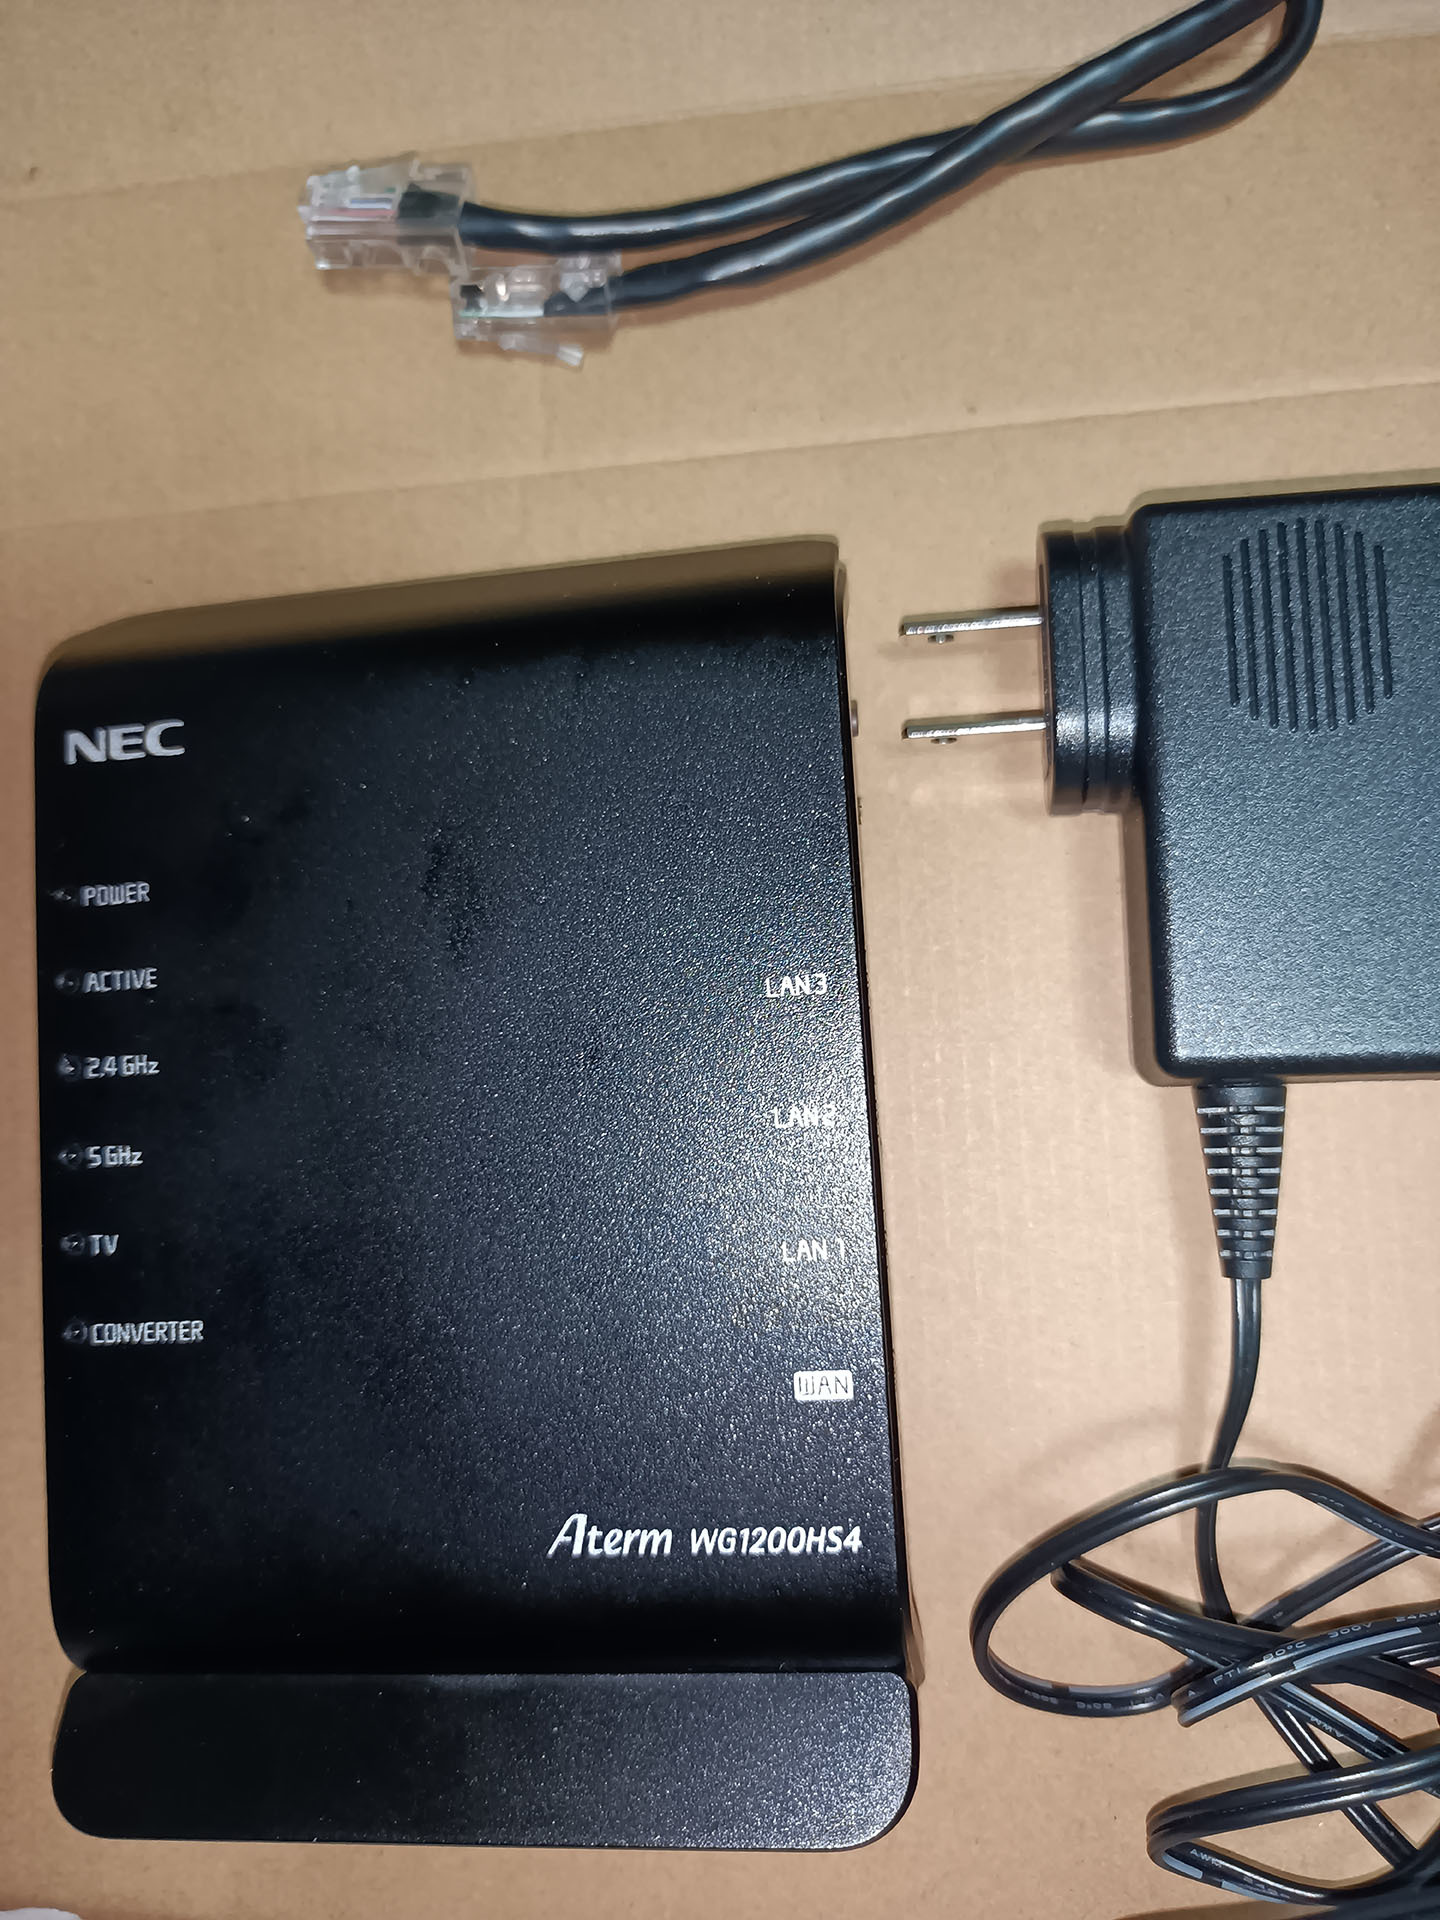 NEC 無線ルーター Aterm WG1200HS4 購入したけども へりくつ気味